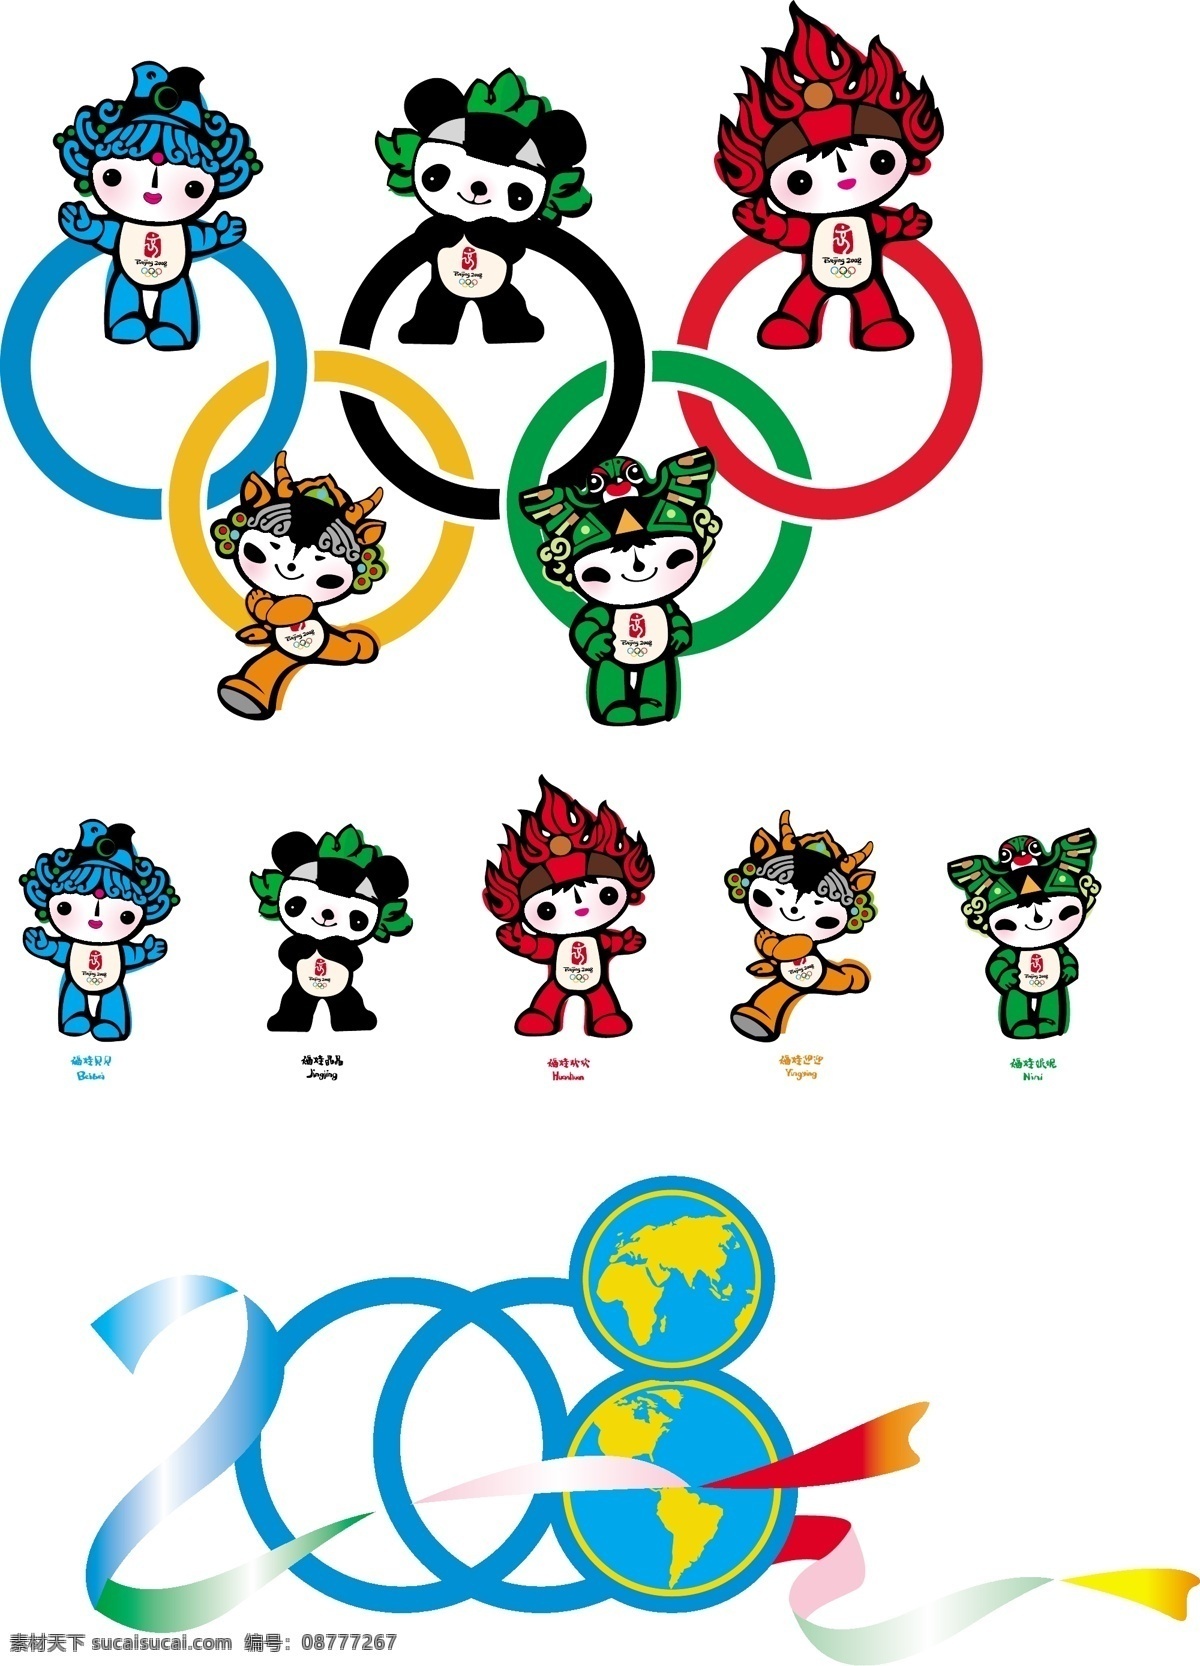 2008 奥运会 吉祥物 福娃 卡通 可爱 模板 设计稿 素材元素 源文件 矢量图